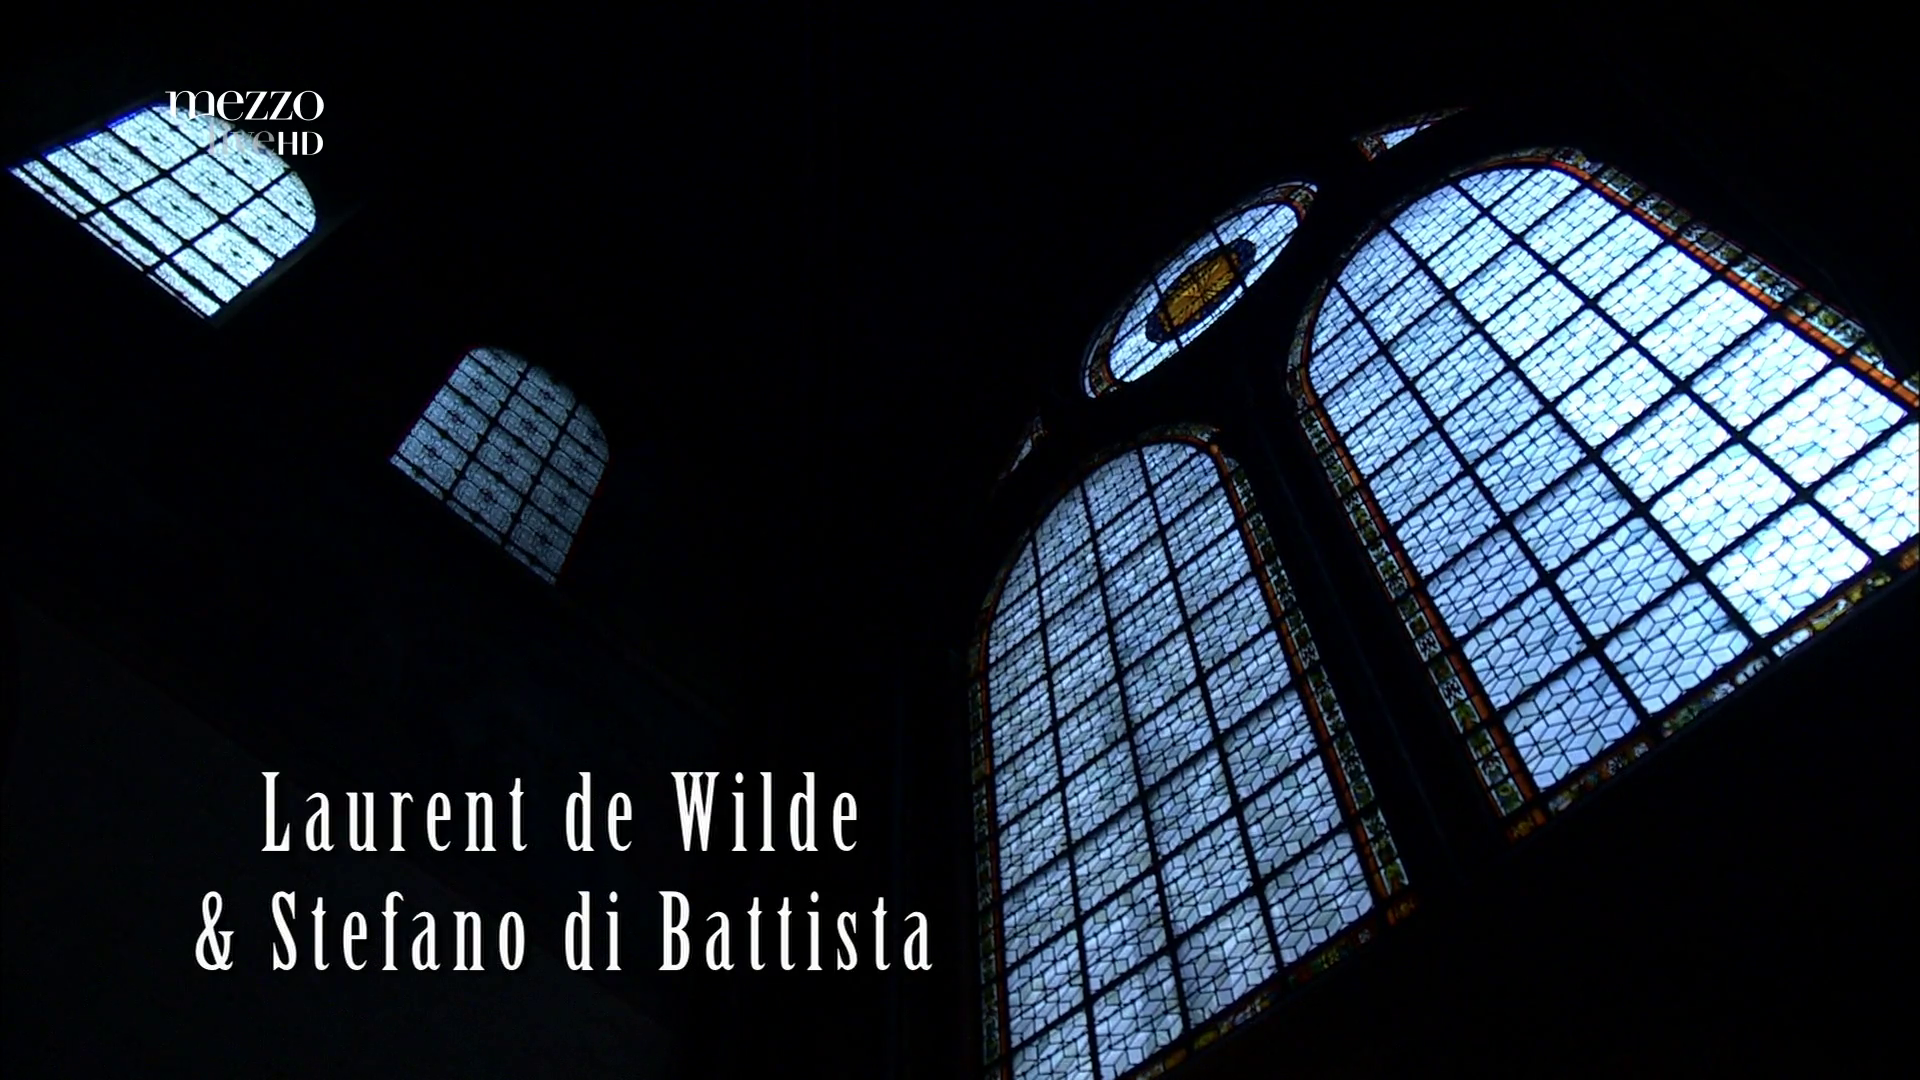 2012 Laurent de Wilde & Stefano di Battista - Le Festival Jazz à Saint-Germain-des-Prés [HDTV 1080i] 0